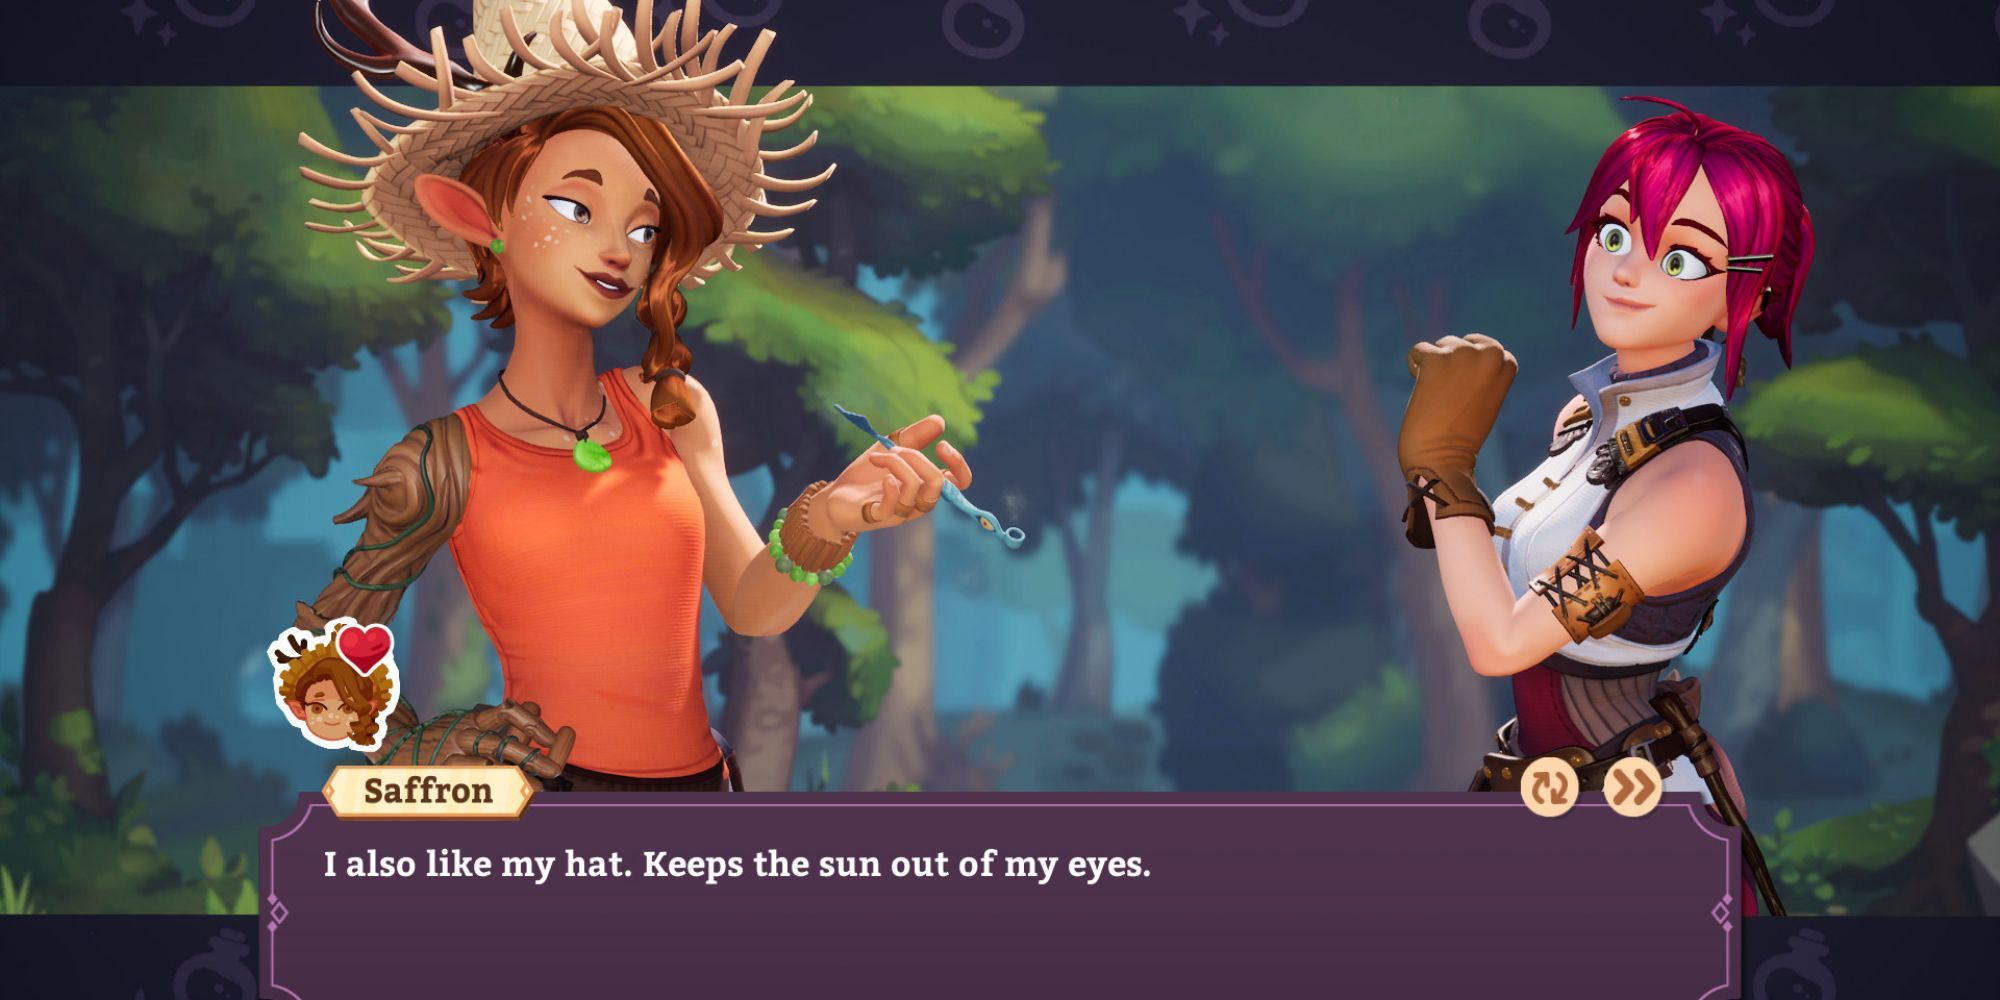 Saffron le dice al jugador que le gusta su sombrero, ya que le protege del sol en los ojos en Potionomics.